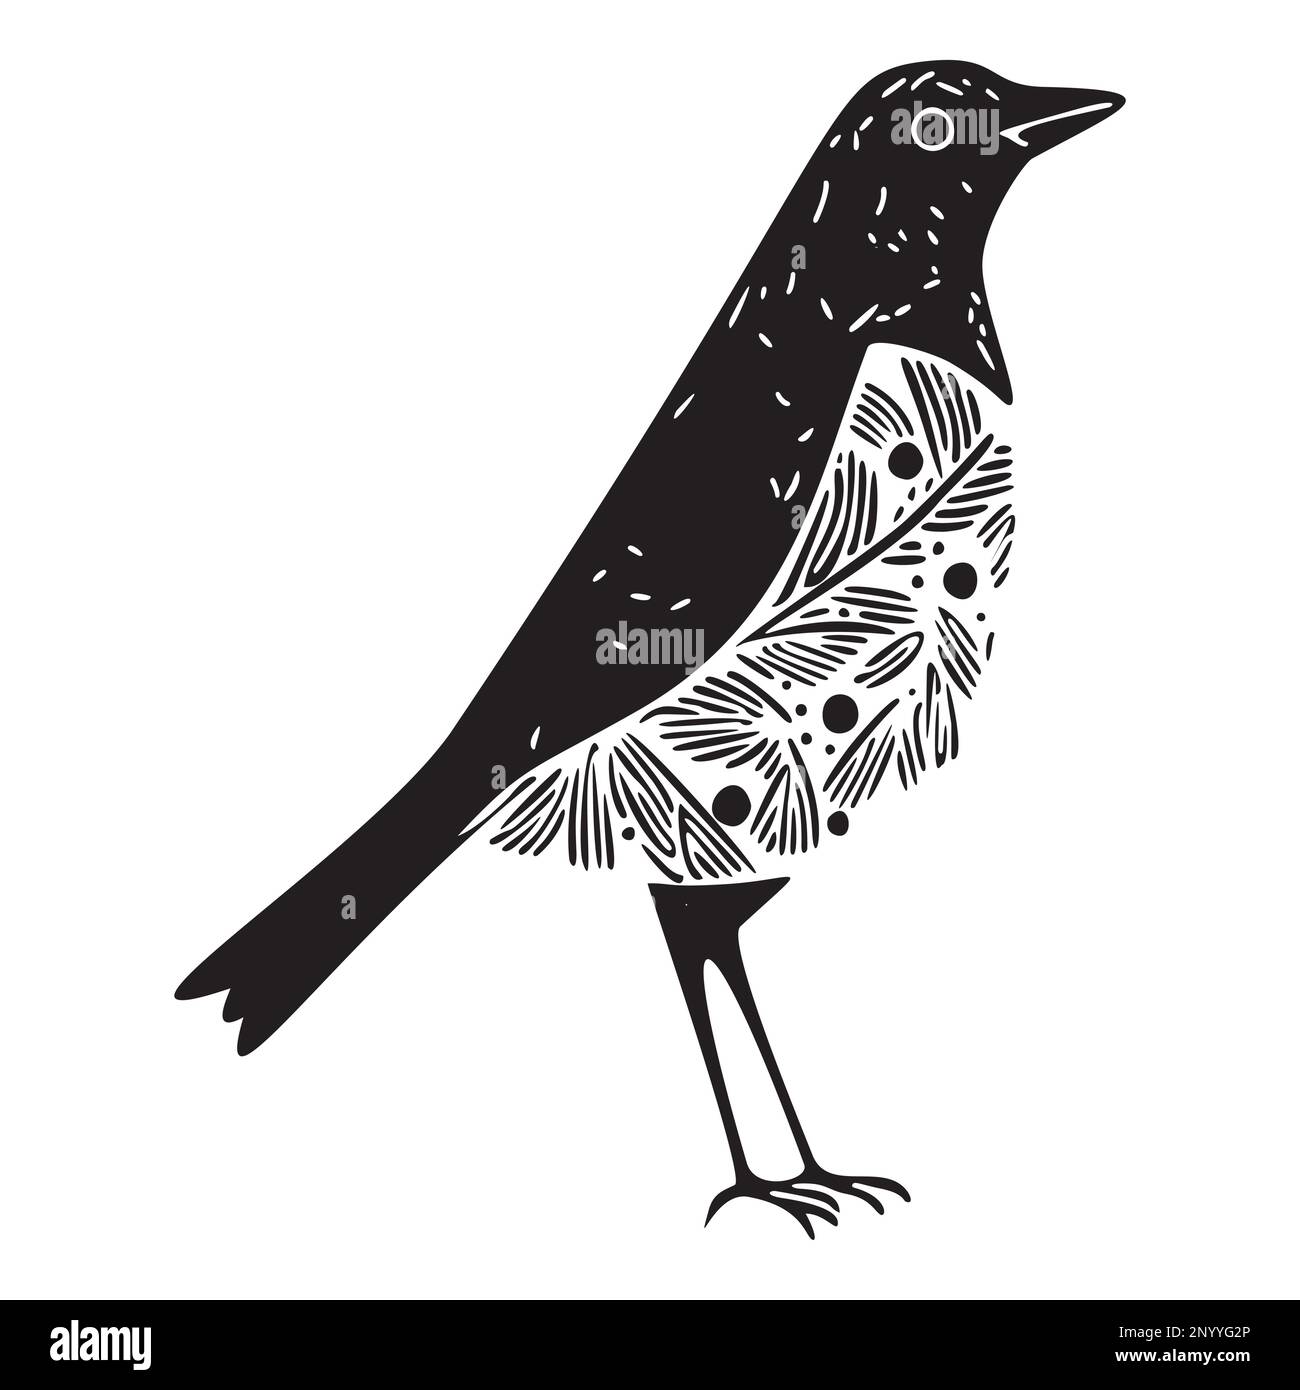 Cute bird vector icon. Low brow wildlife motif in scnadi style.  Stock Vector